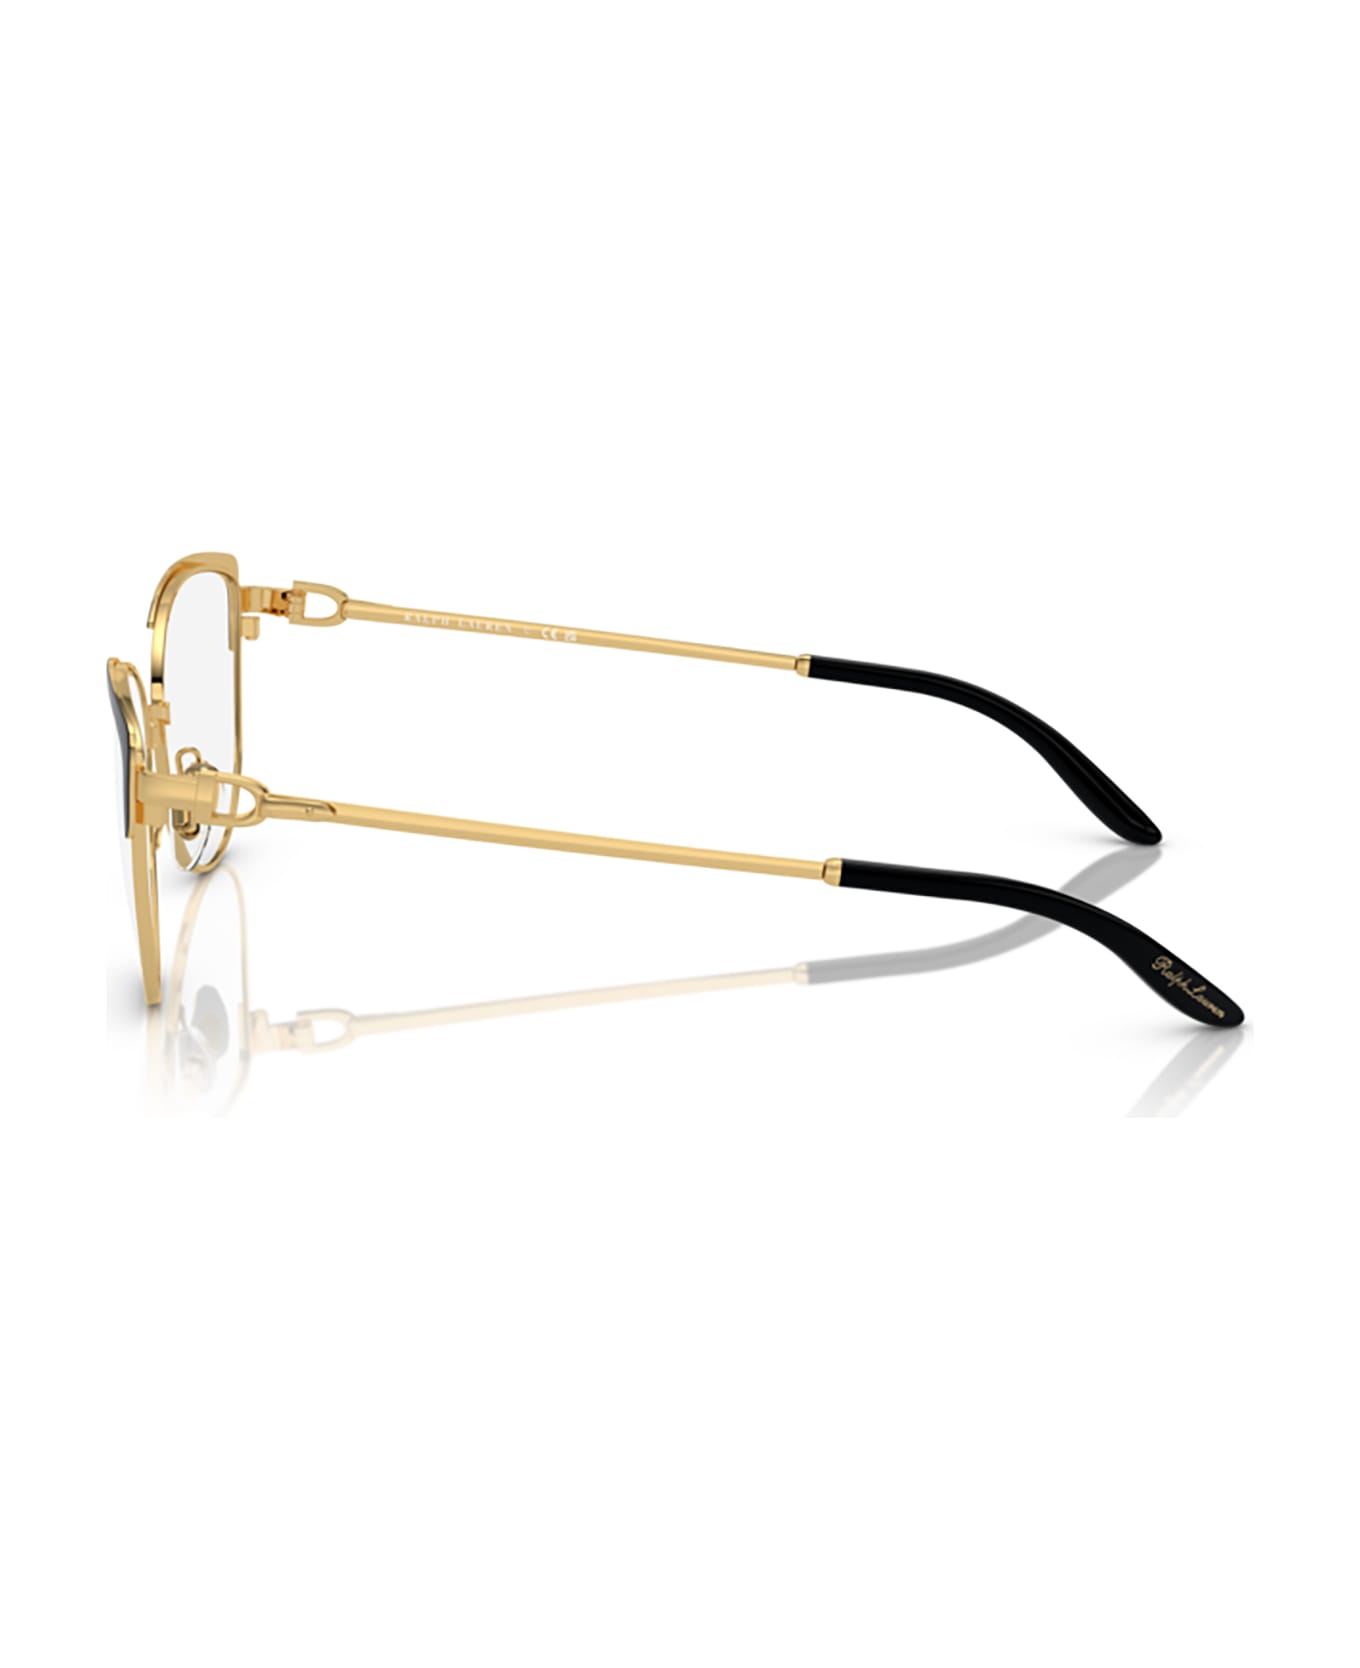 Ralph Lauren Rl5123 Black / Gold Glasses - Black / Gold